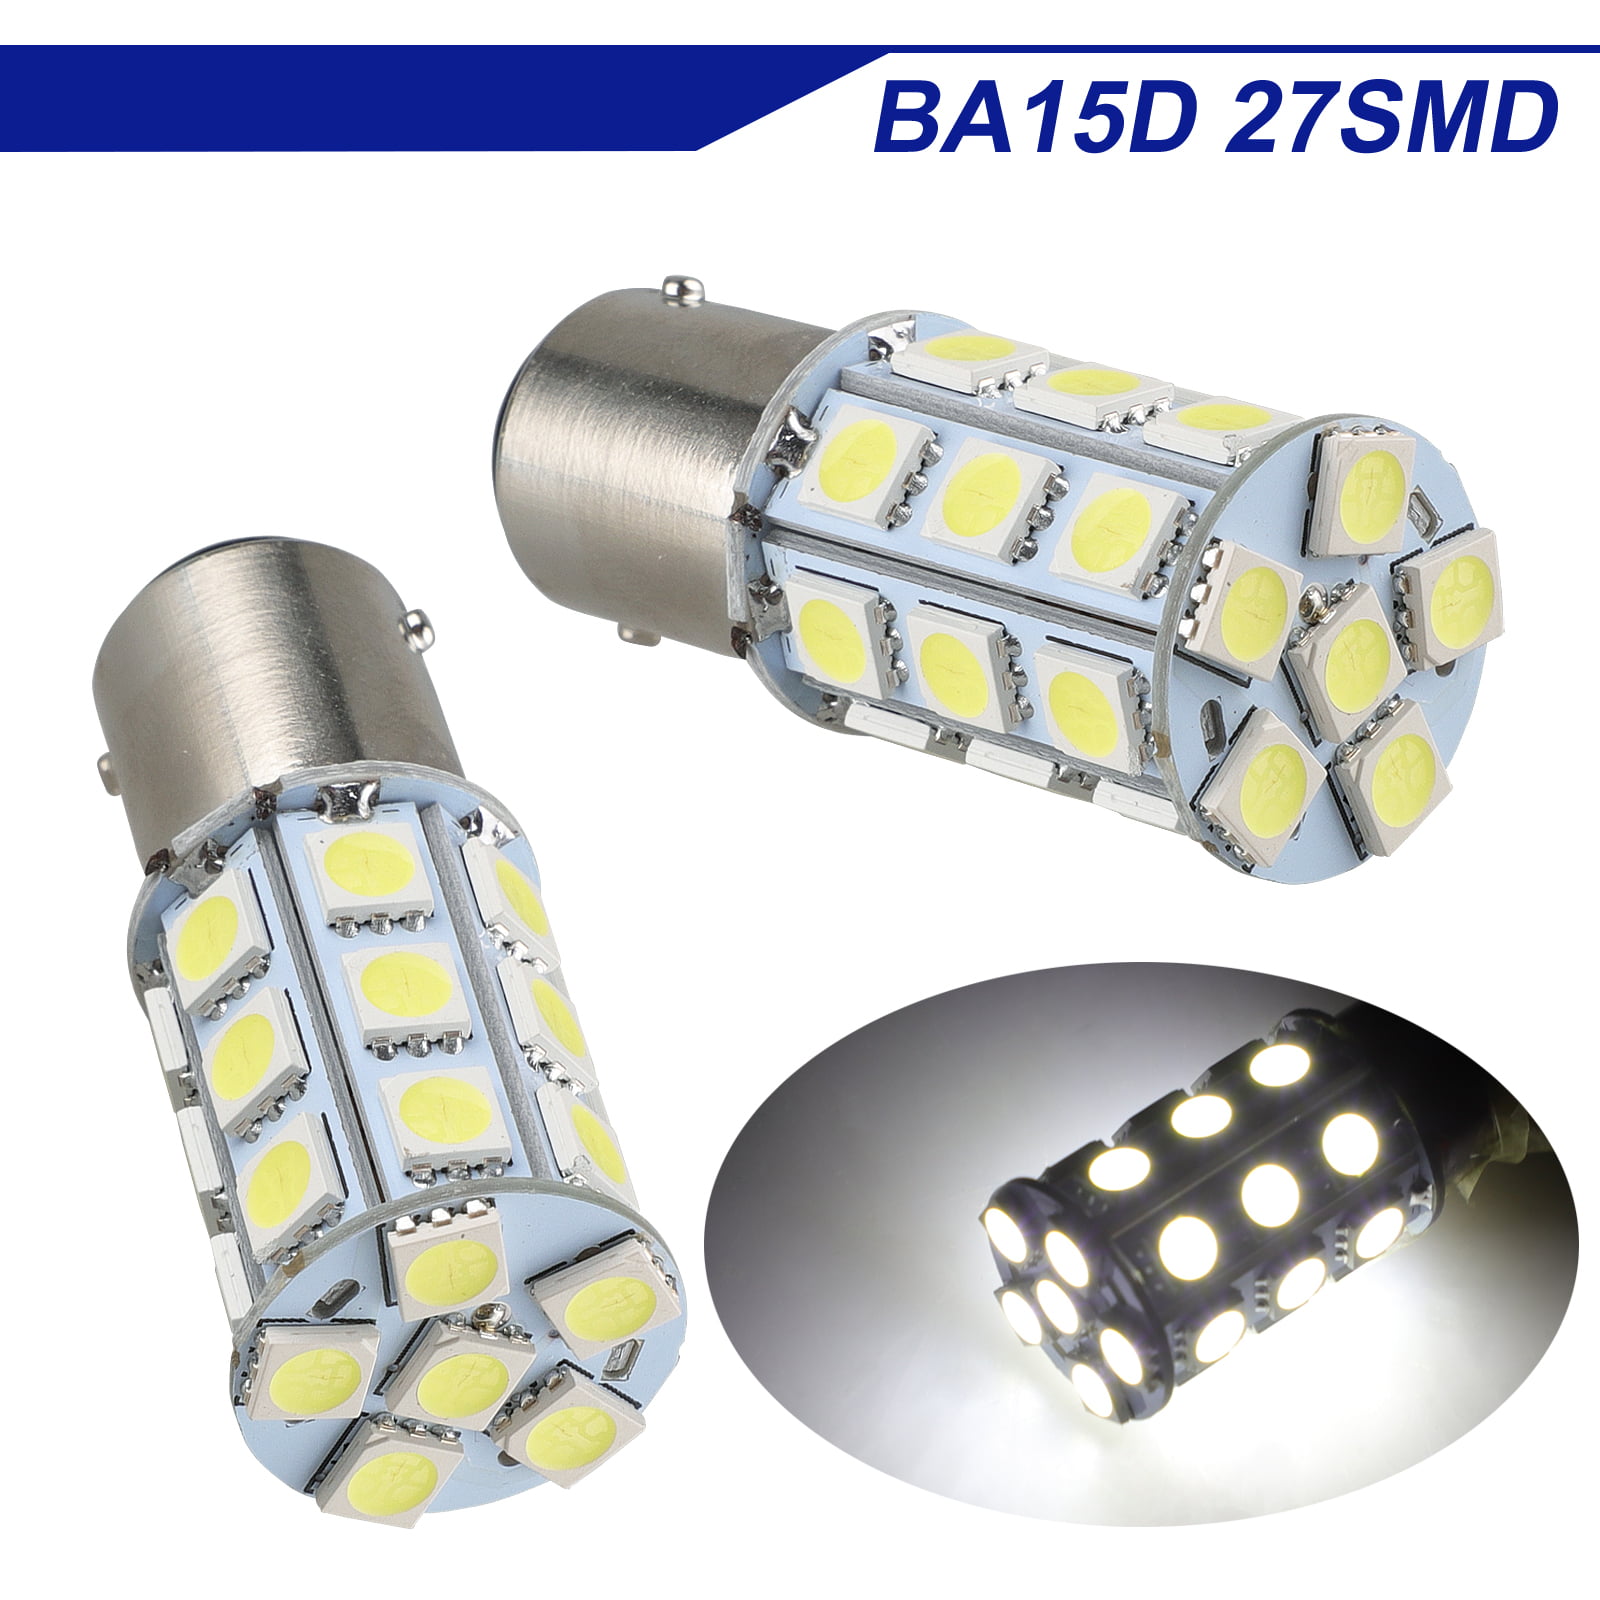 BA15D LED   27 SMD  WHITE INTERIOR LED LIGHT BULB